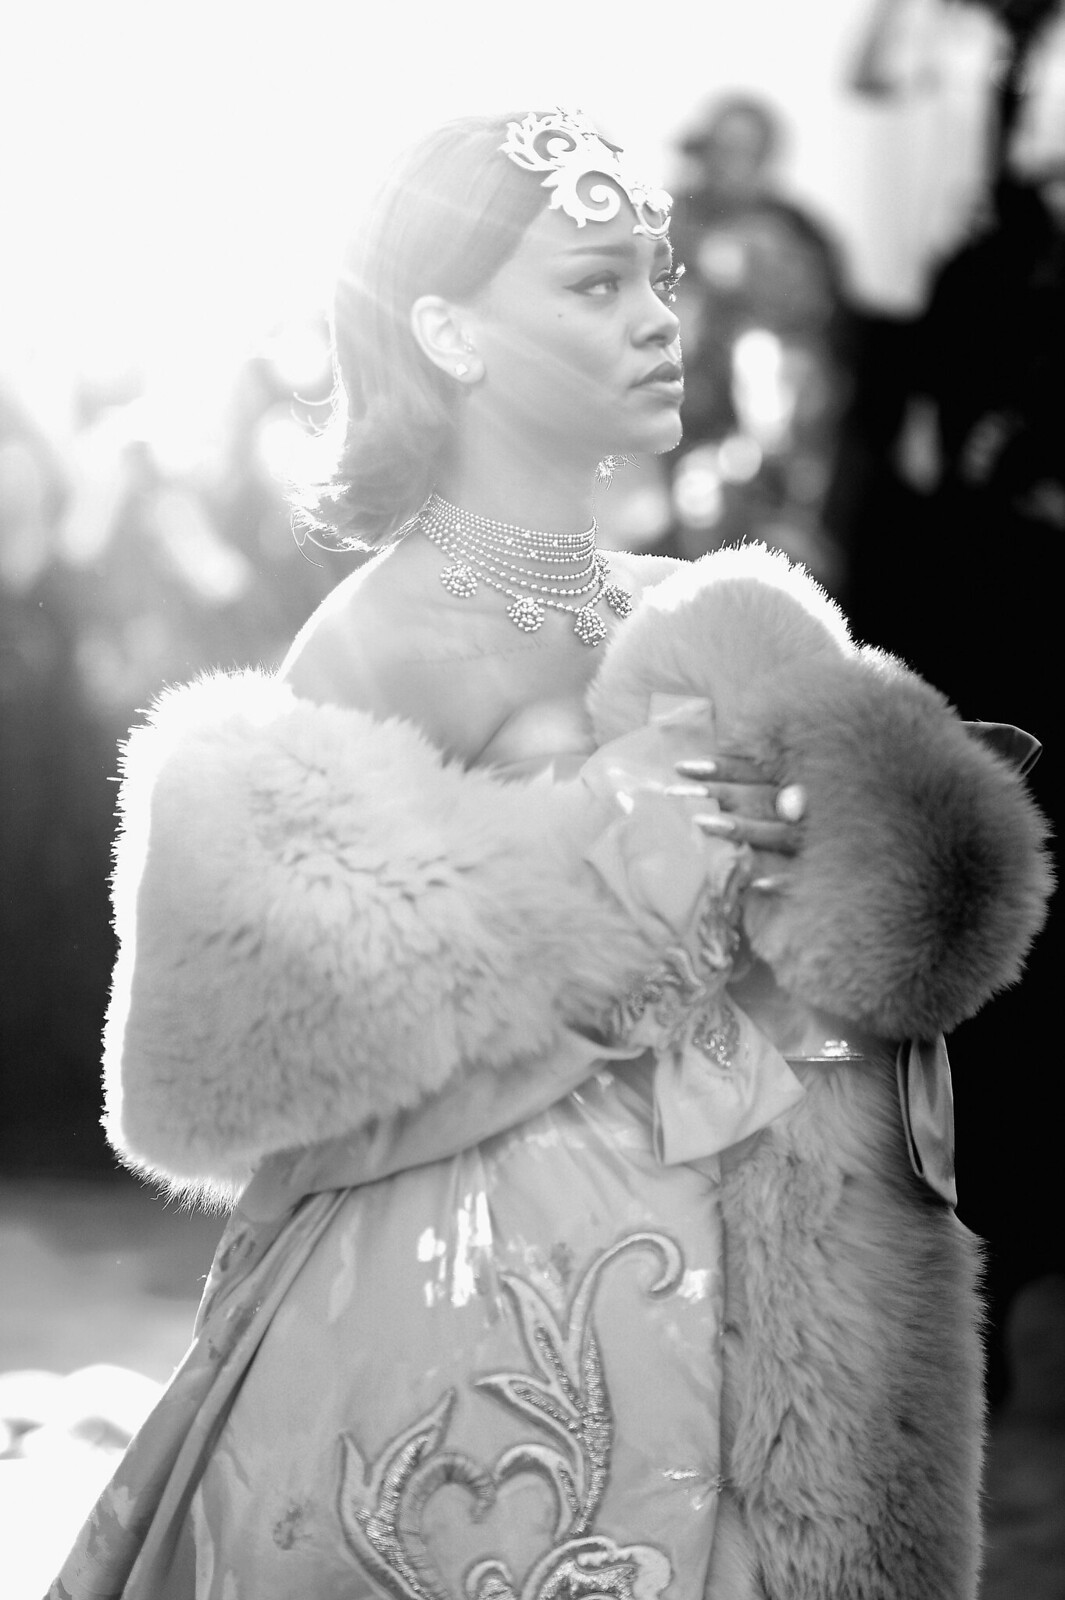 Fotos de Rihanna (apariciones, conciertos, portadas...) [16] - Página 11 17197392199_56556d7141_h